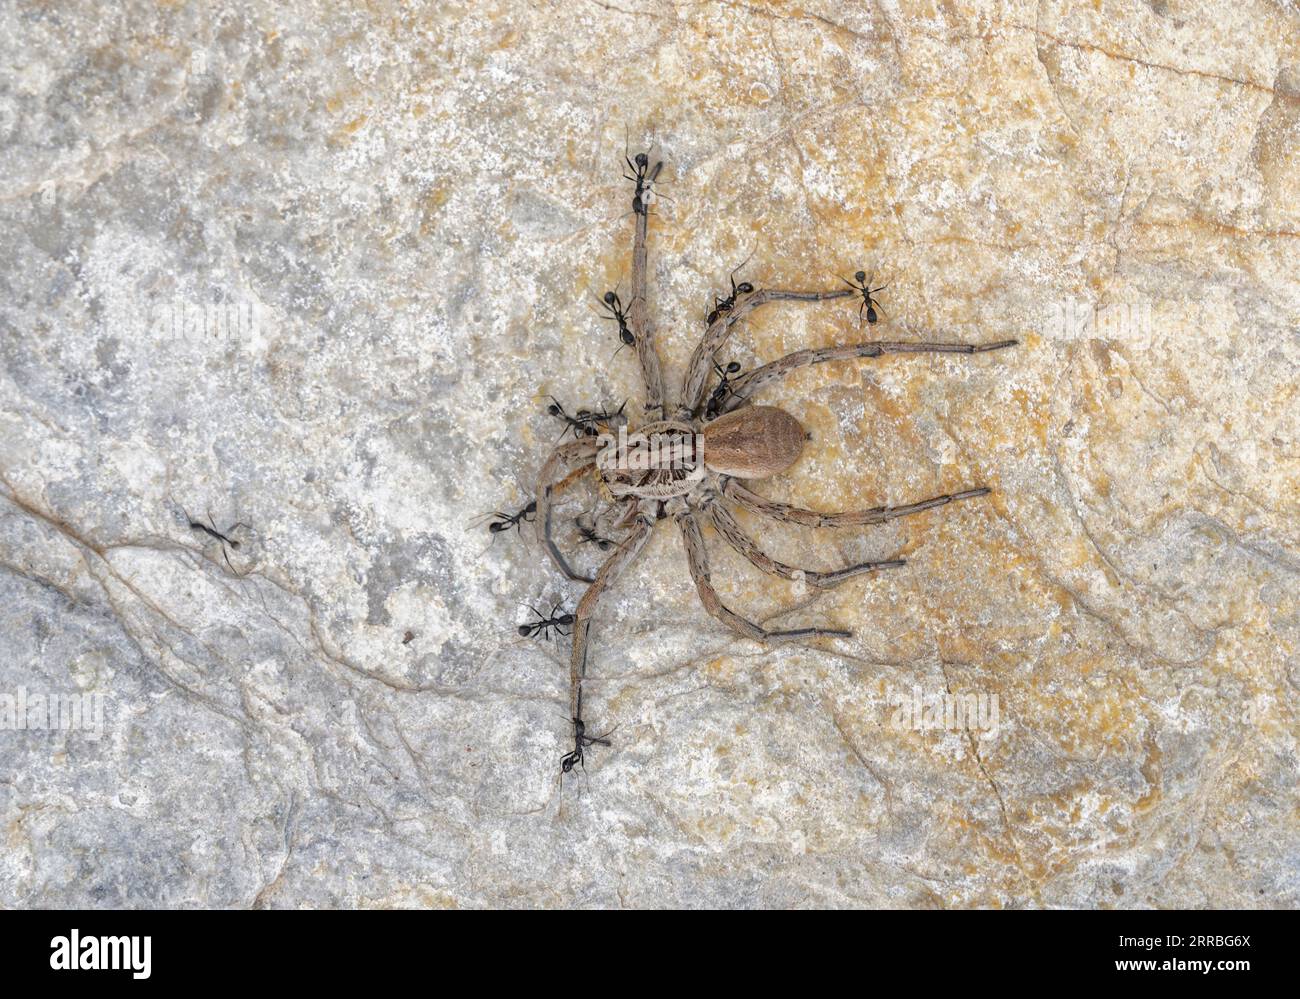 Fourmis noires traînant une araignée loup morte vers leur nid. Banque D'Images